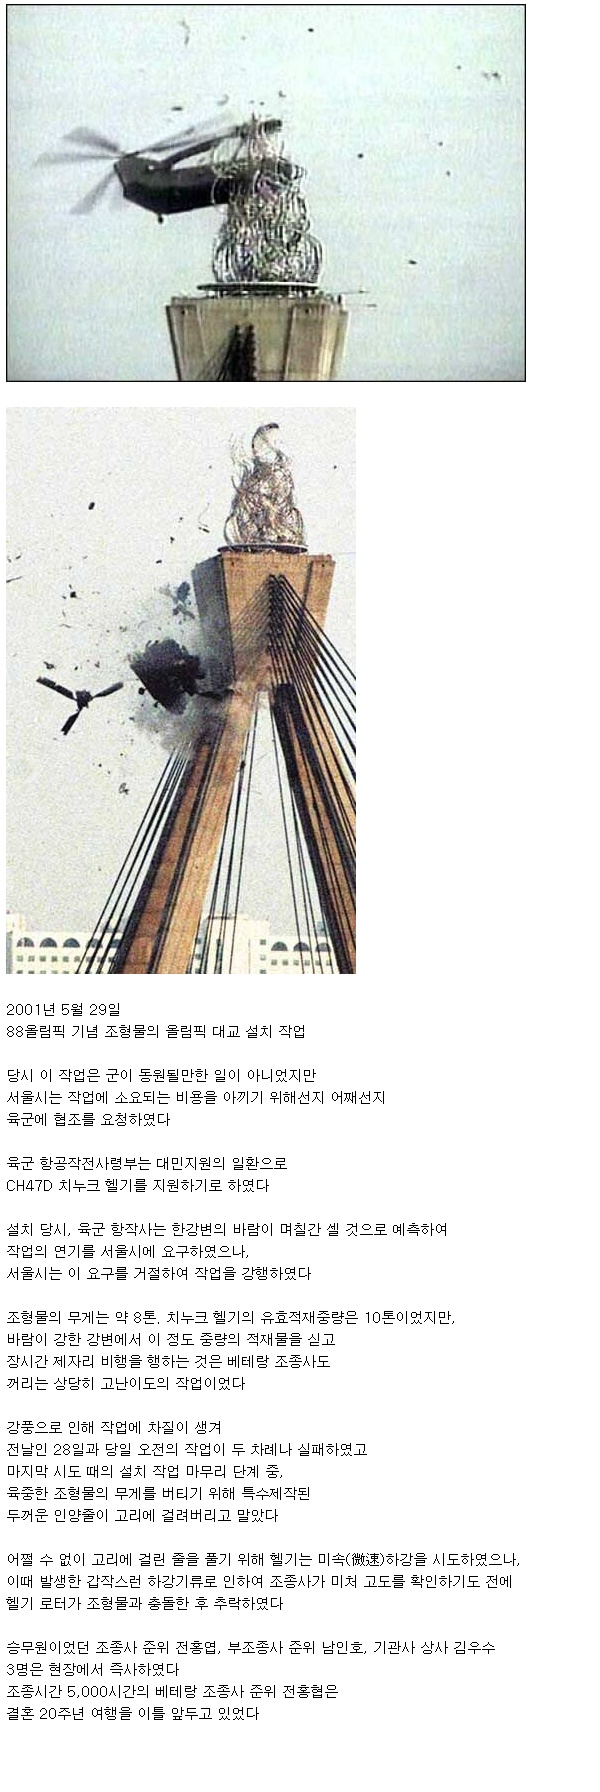 서울에서 일어났던 헬기 추락사고